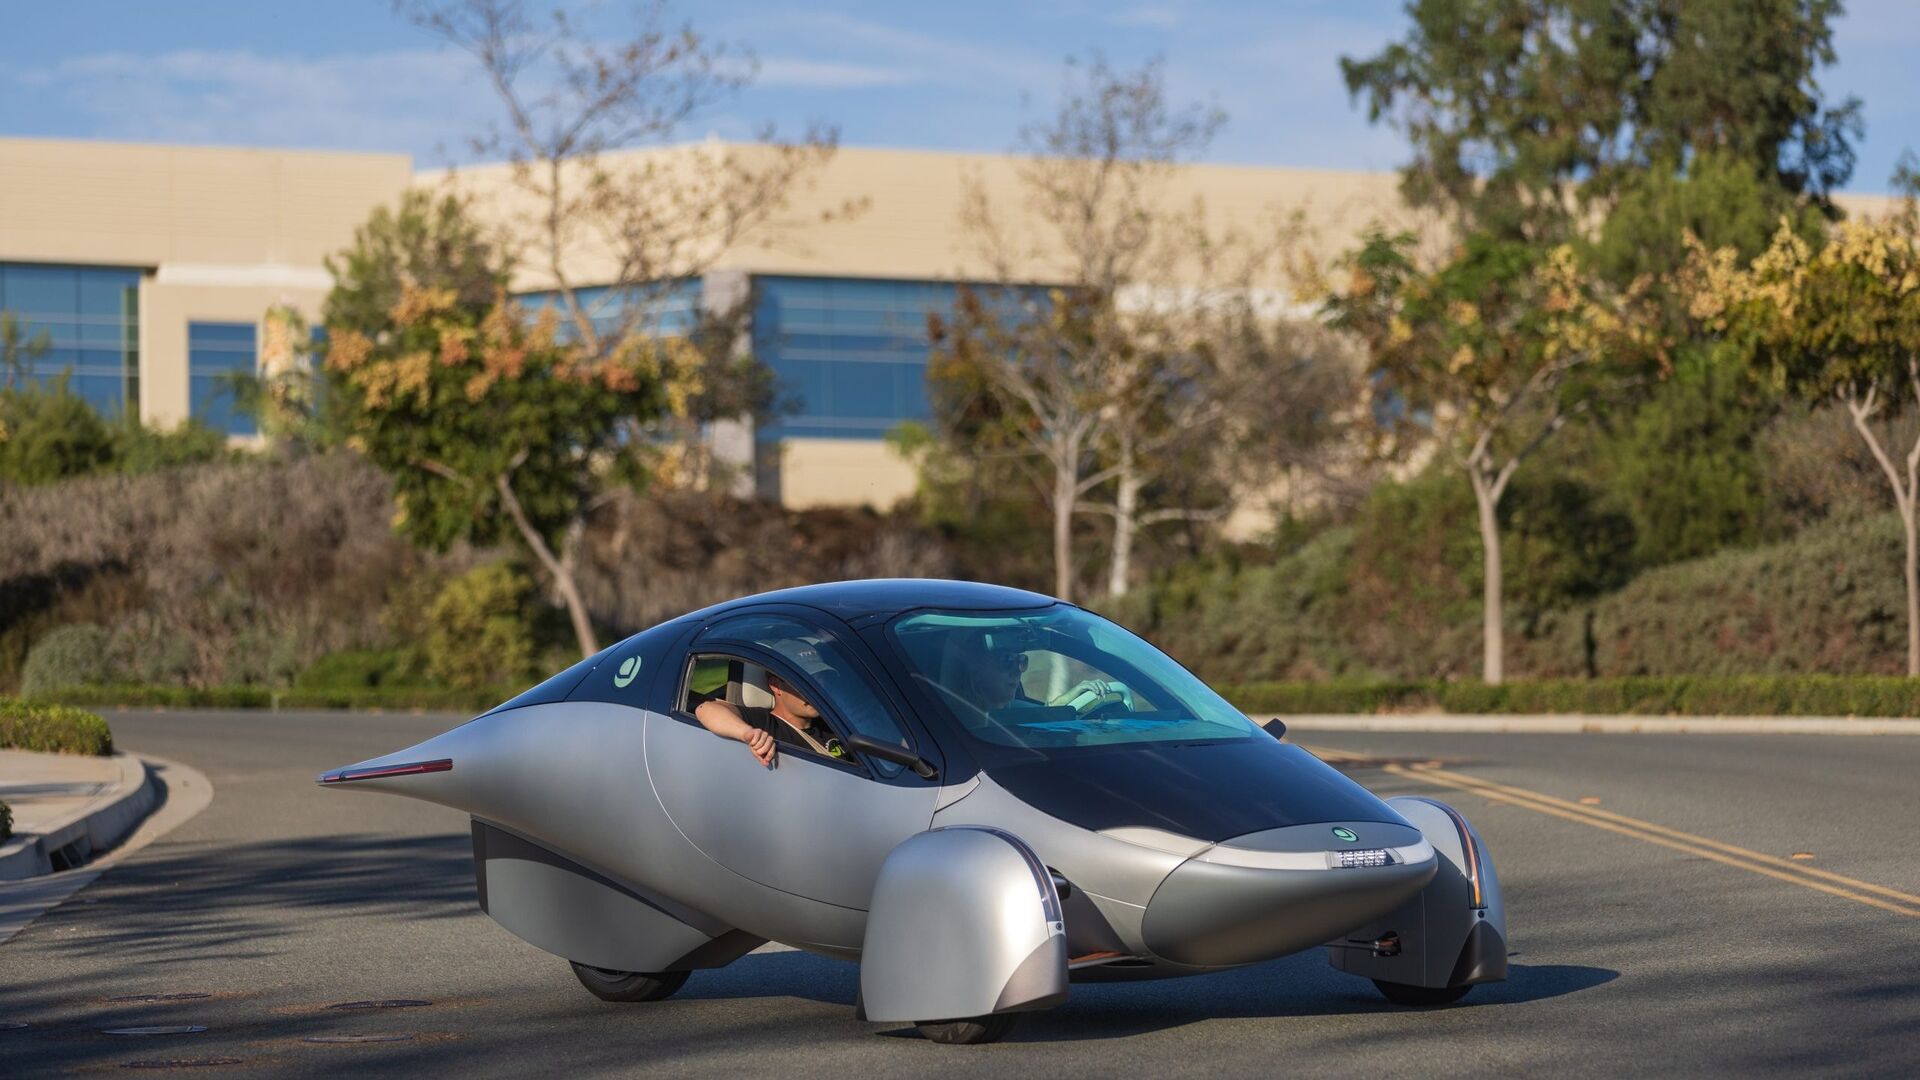 Solarni avto: Aptera Delta je najbolj trajnosten avtomobil na svetu z dosegom 1600 km na baterijsko napajanje in 70 km na sončno energijo